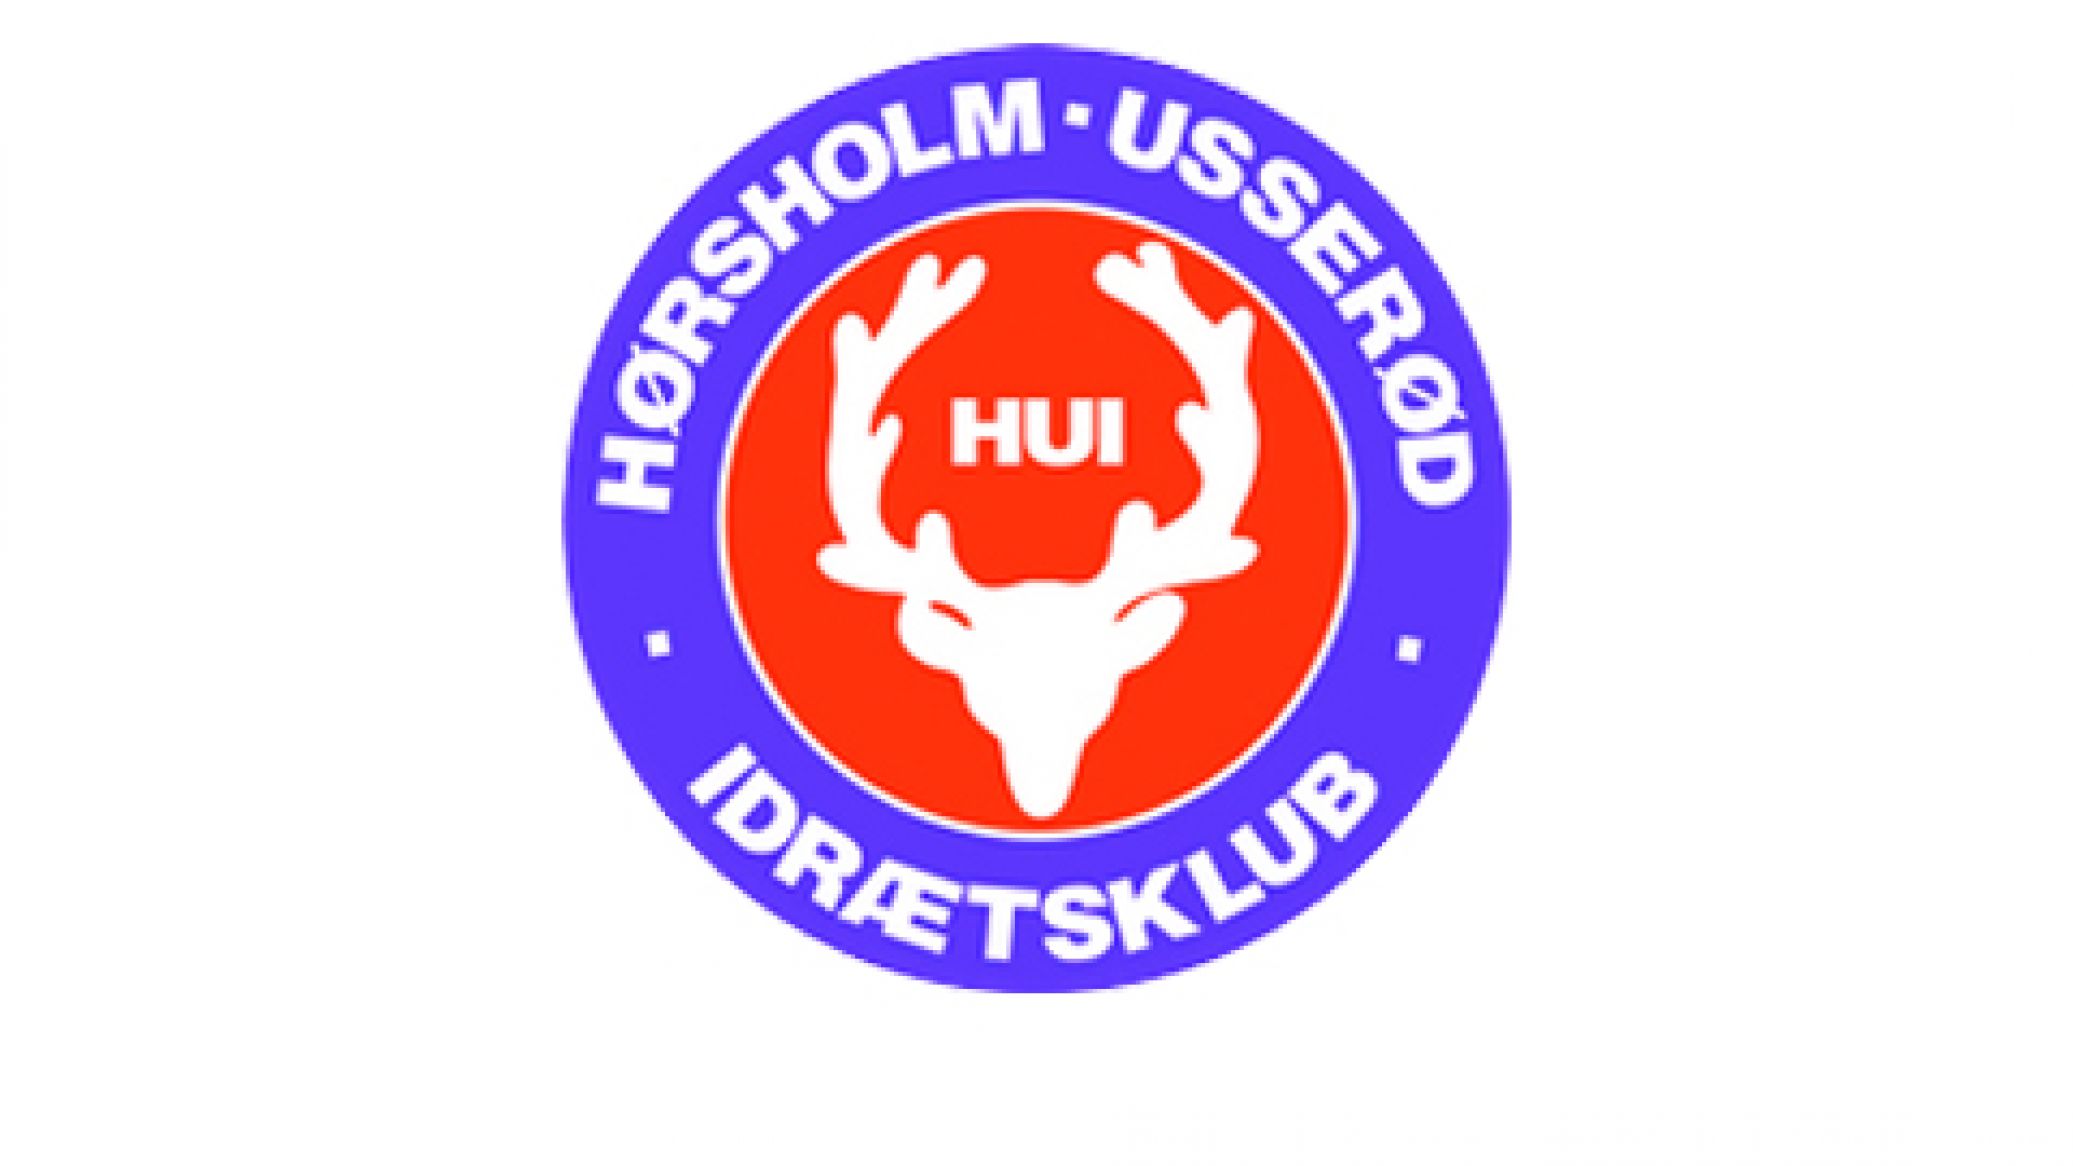 Hørsholm-Usserød Idrætsklub